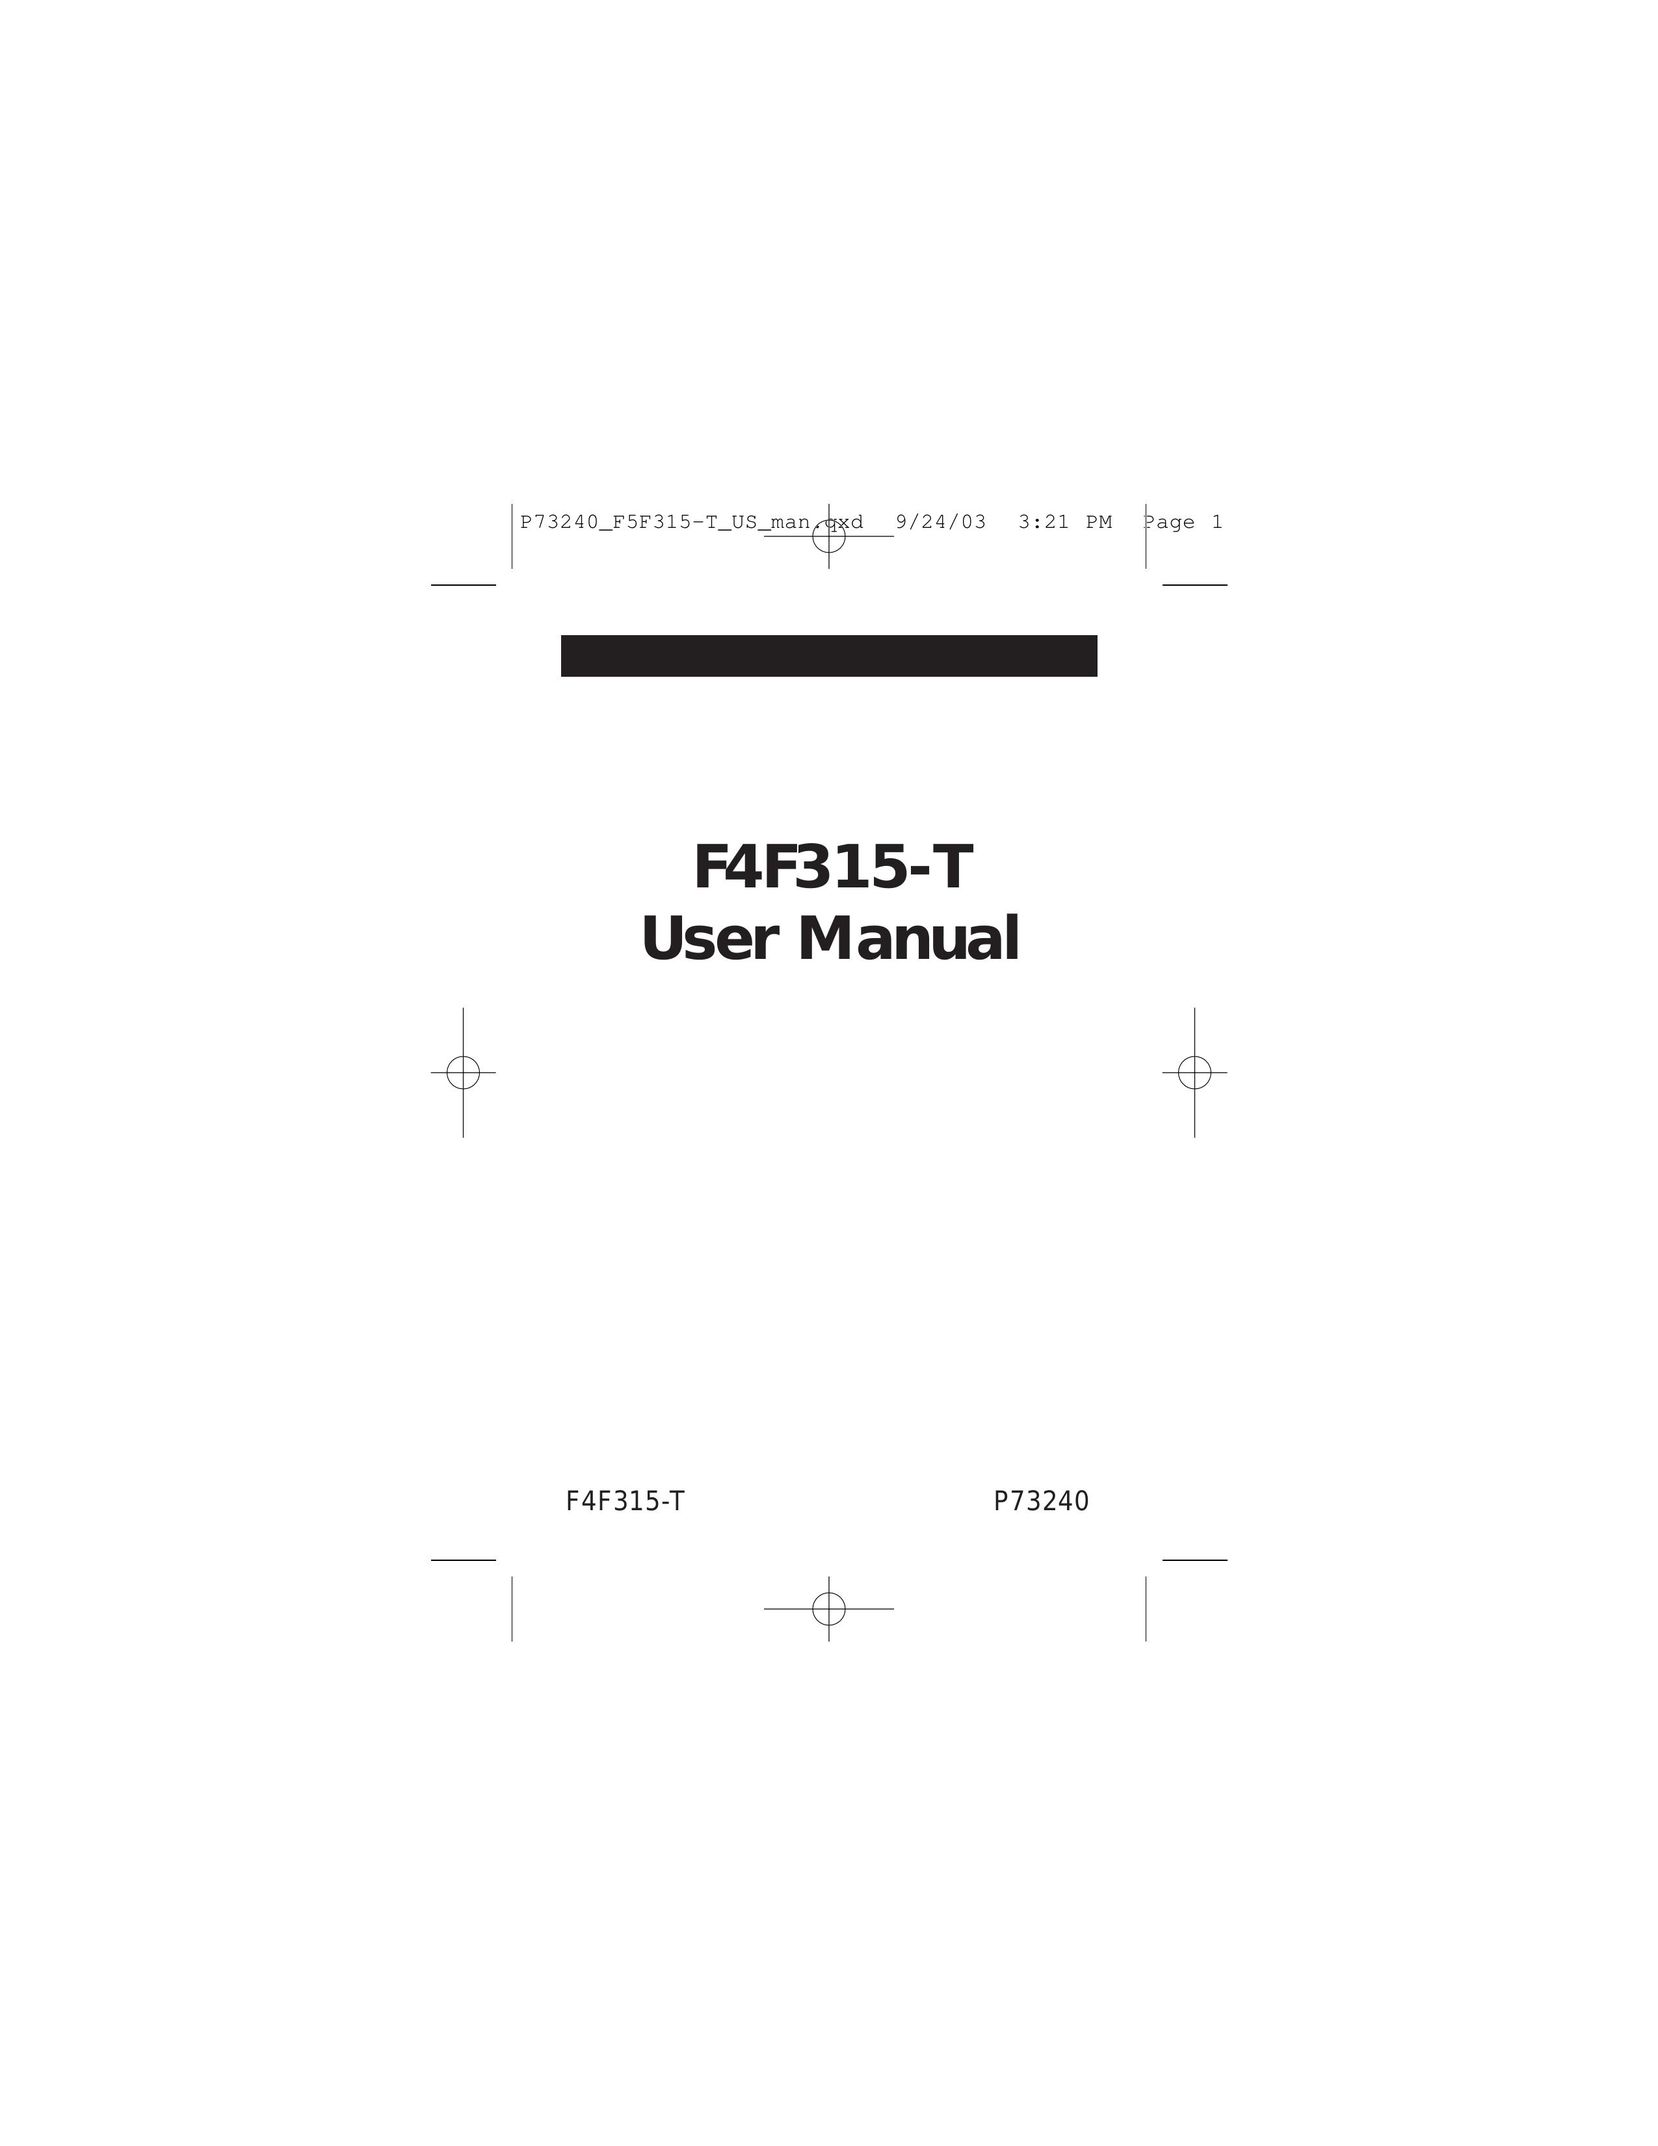 Belkin F4F315-T Universal Remote User Manual